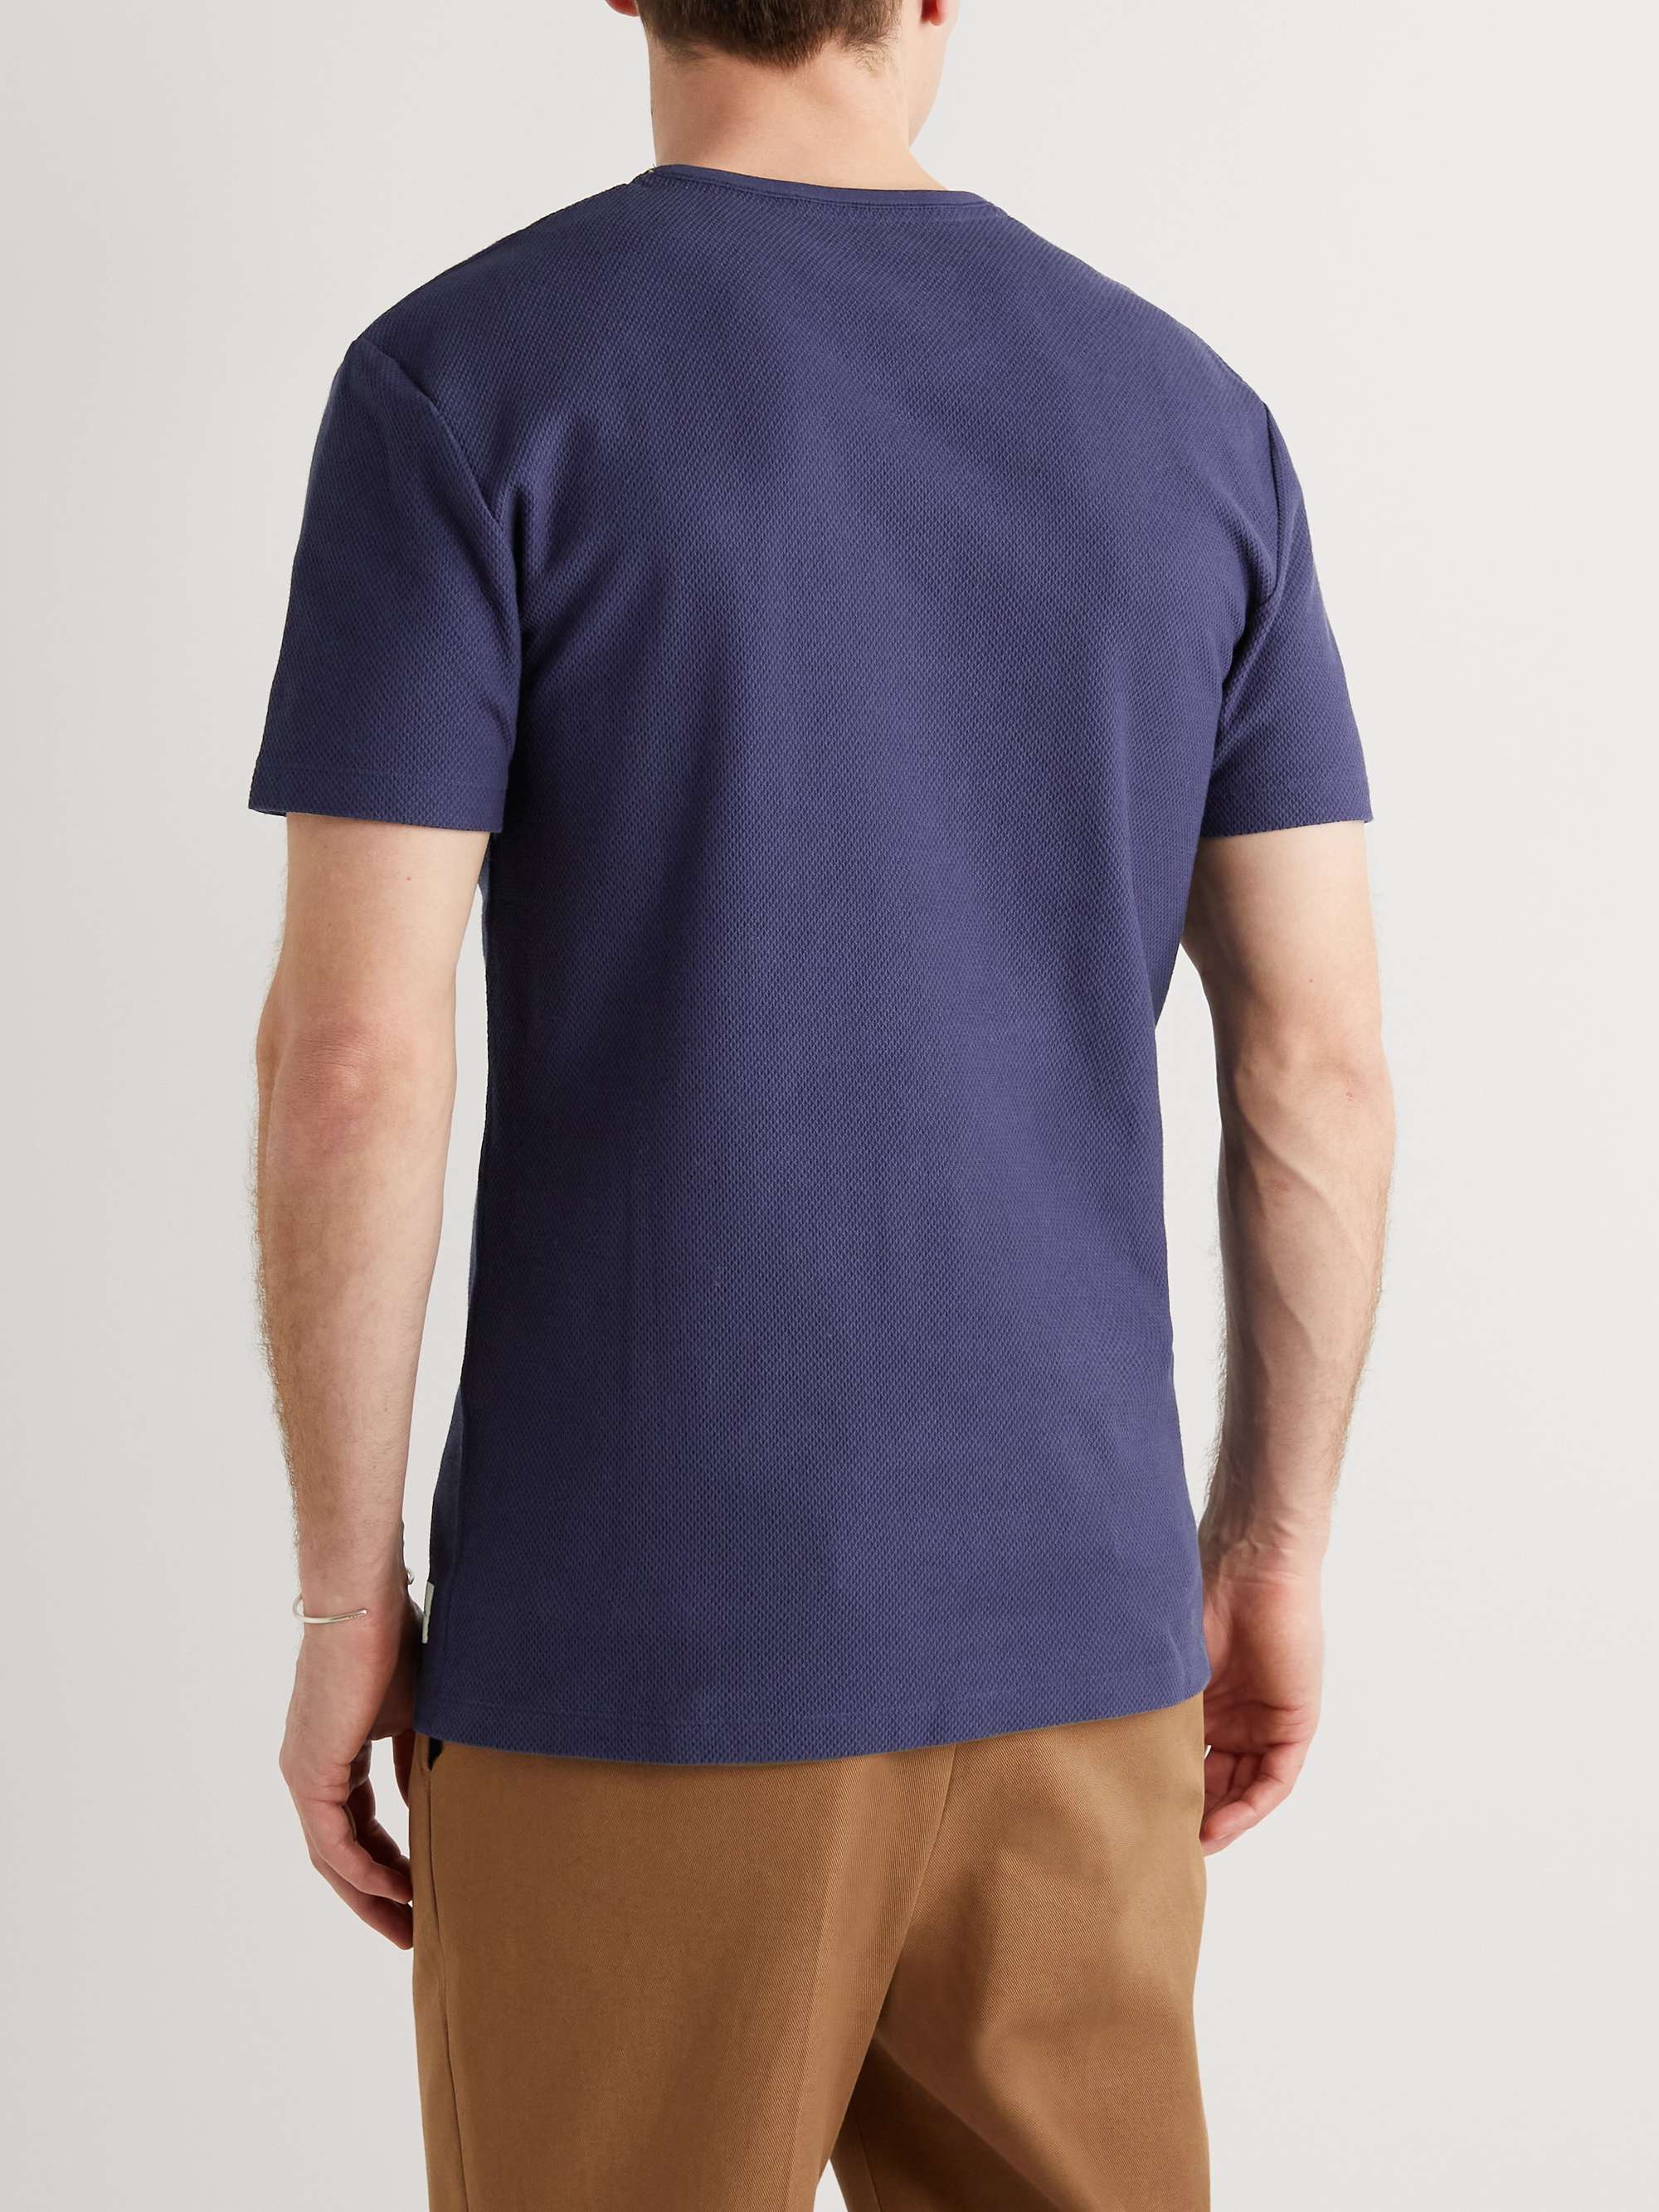 PAUL SMITH Slim-Fit Logo-Appliquéd Textured Cotton-Blend Jersey T-Shirt